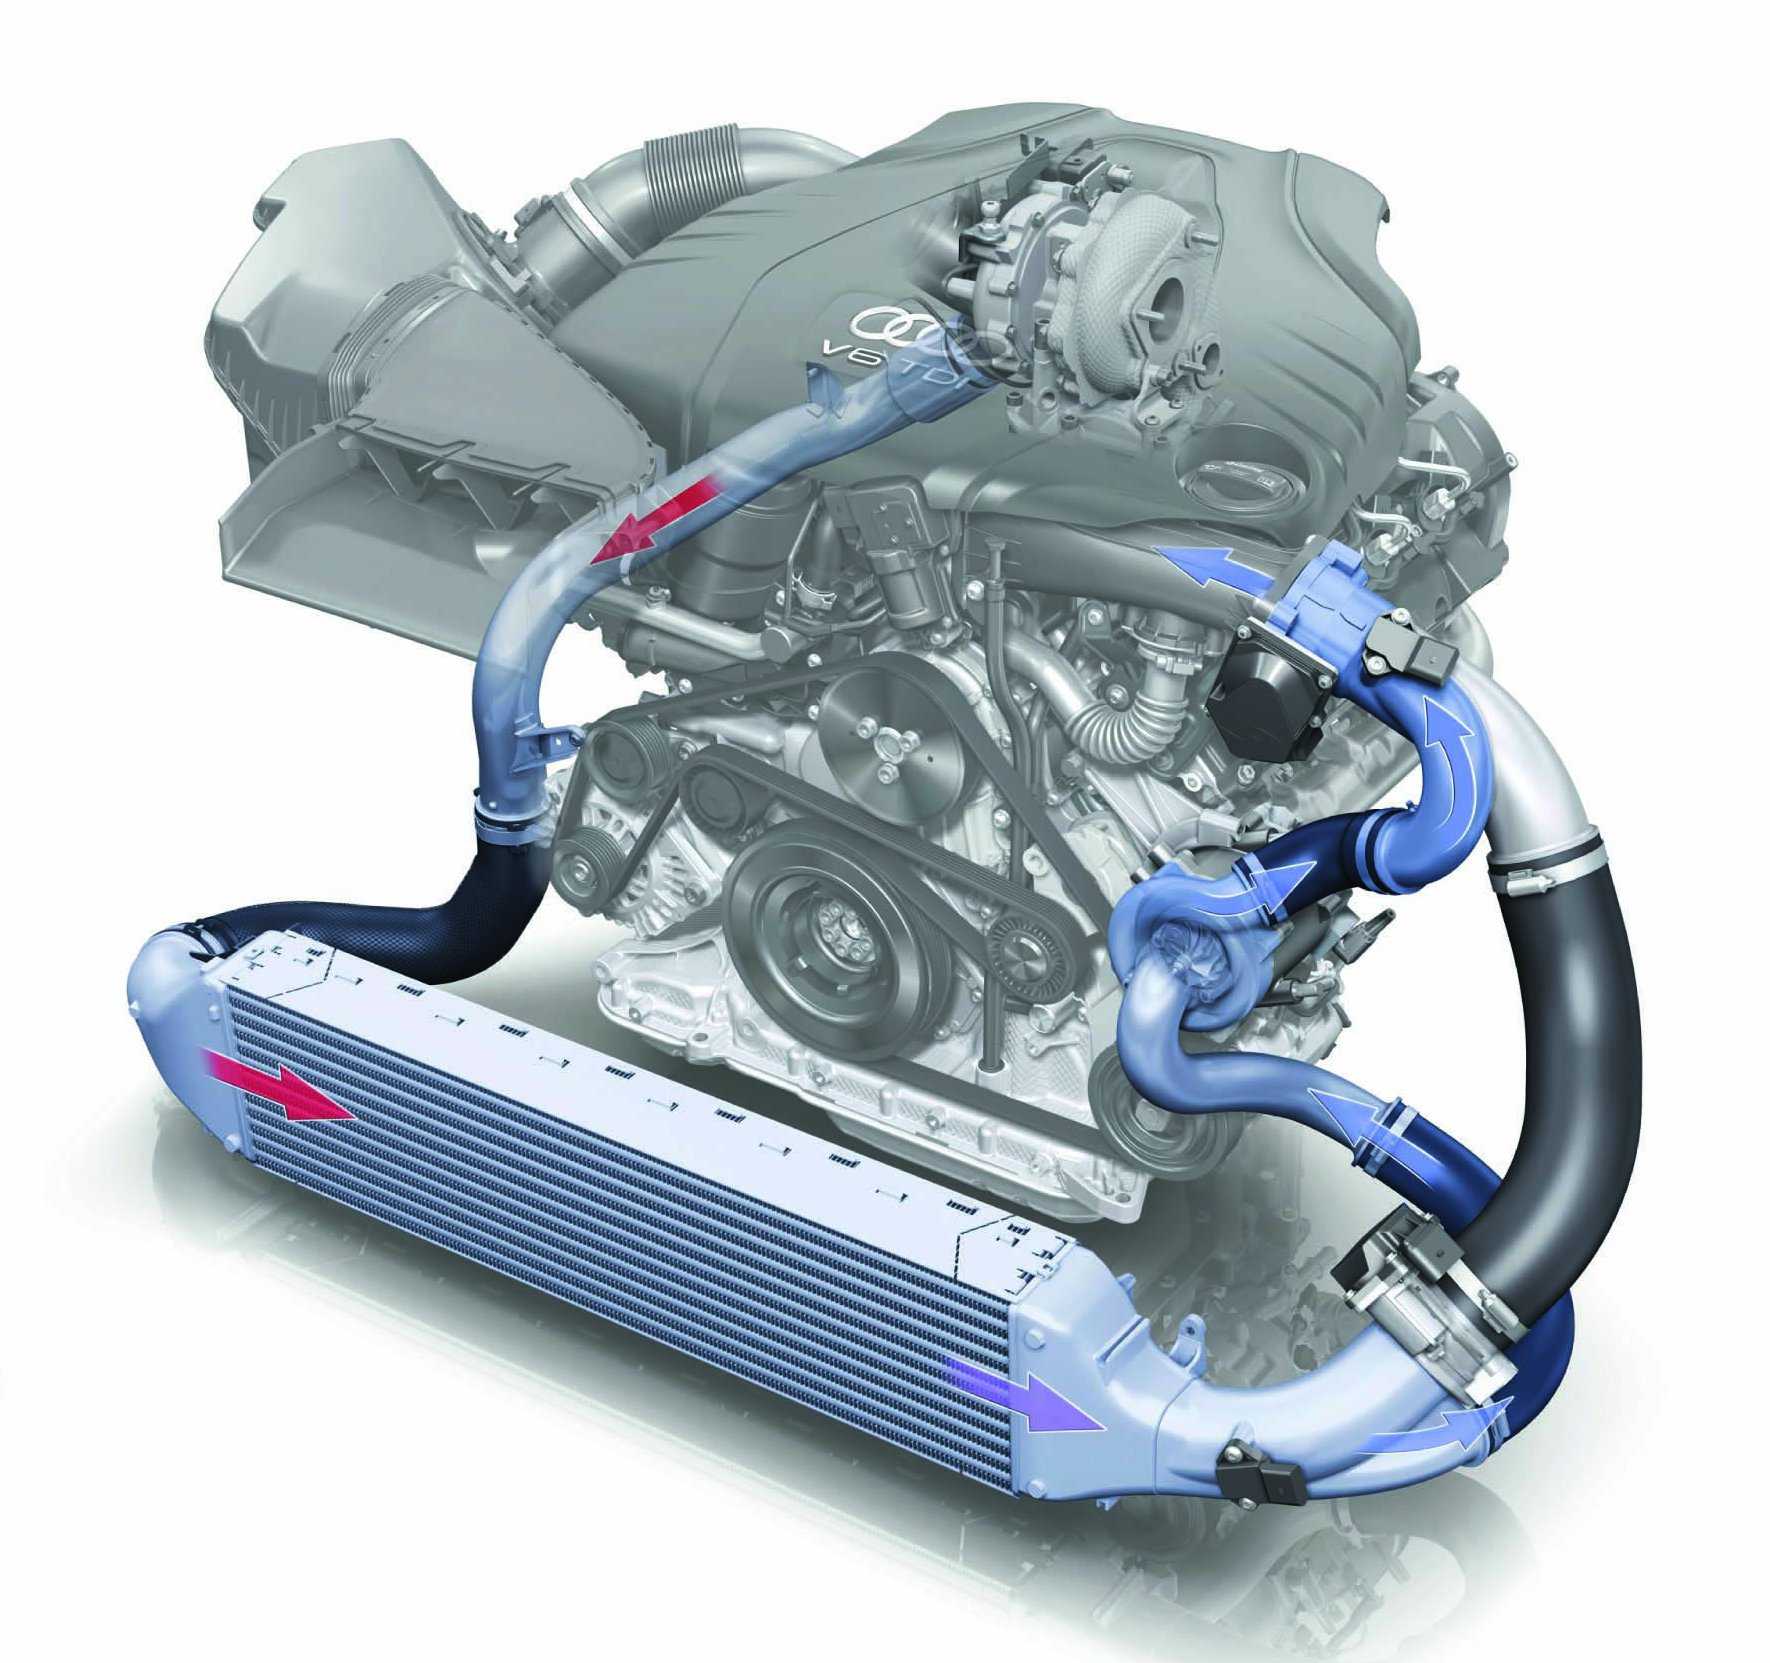 Как проверить турбину дизельного двигателя при покупке?